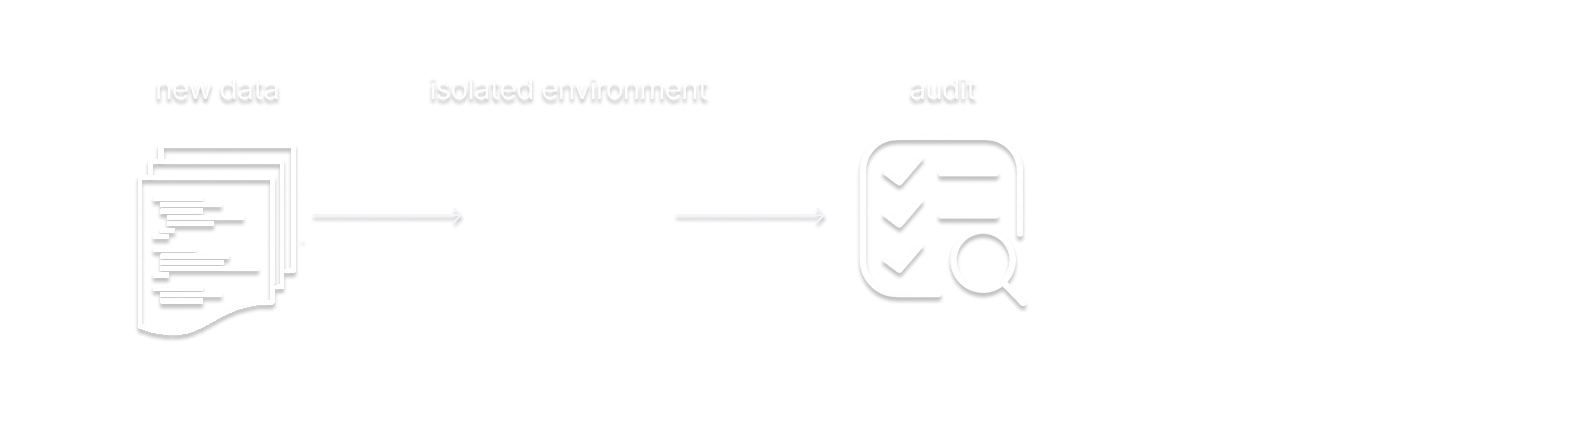 WAP - Audit step